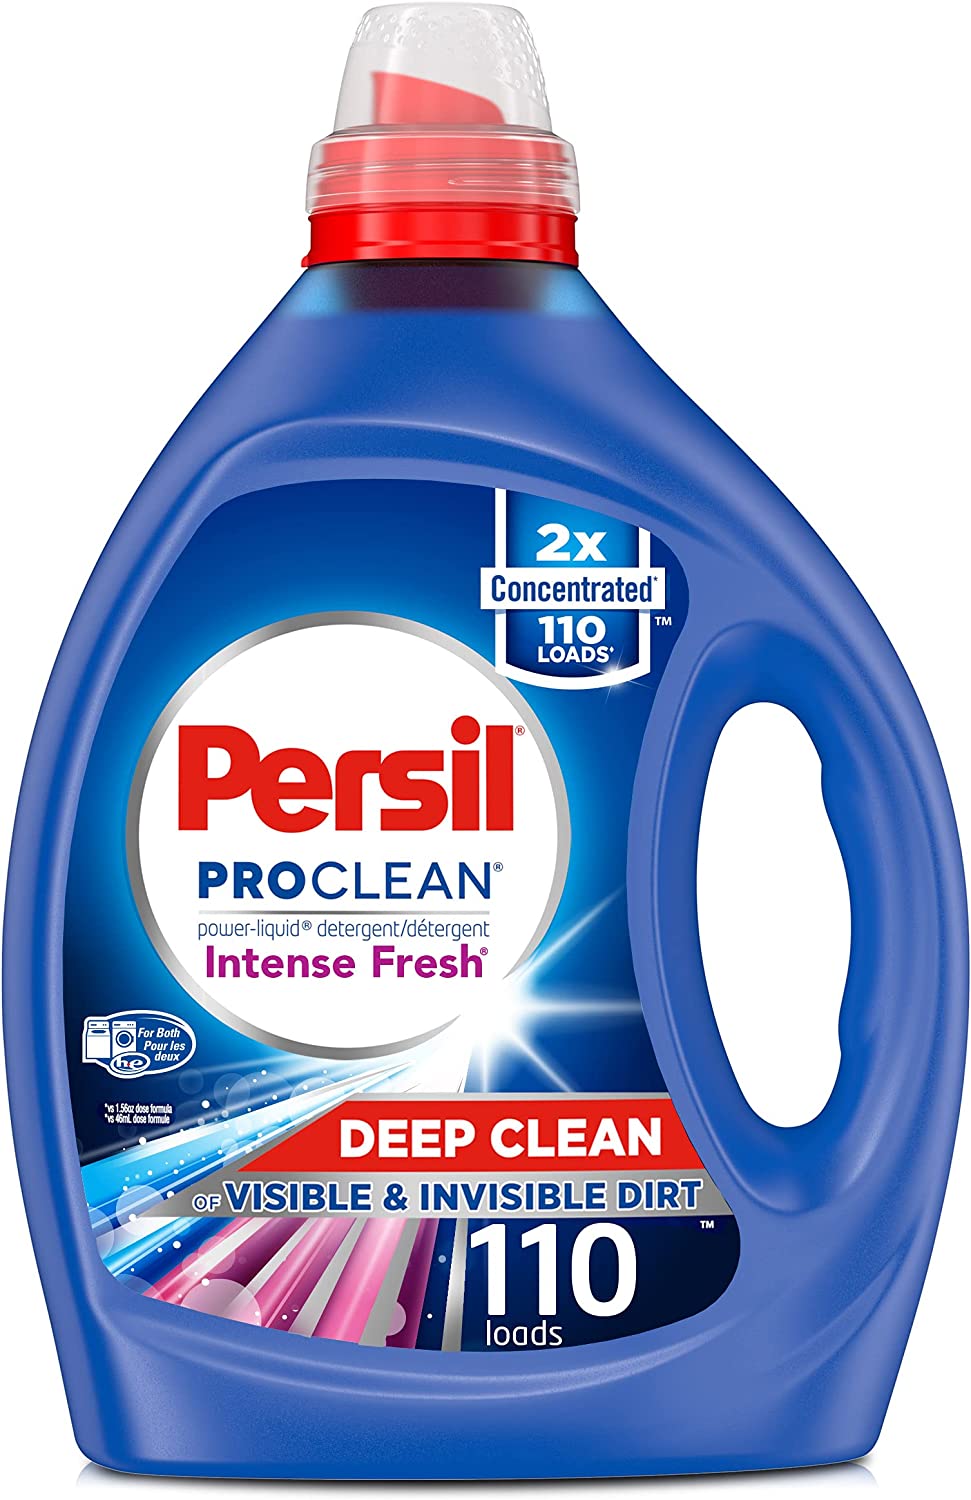 Persil Laundry Detergent Liquid - Intense Fresh Scent